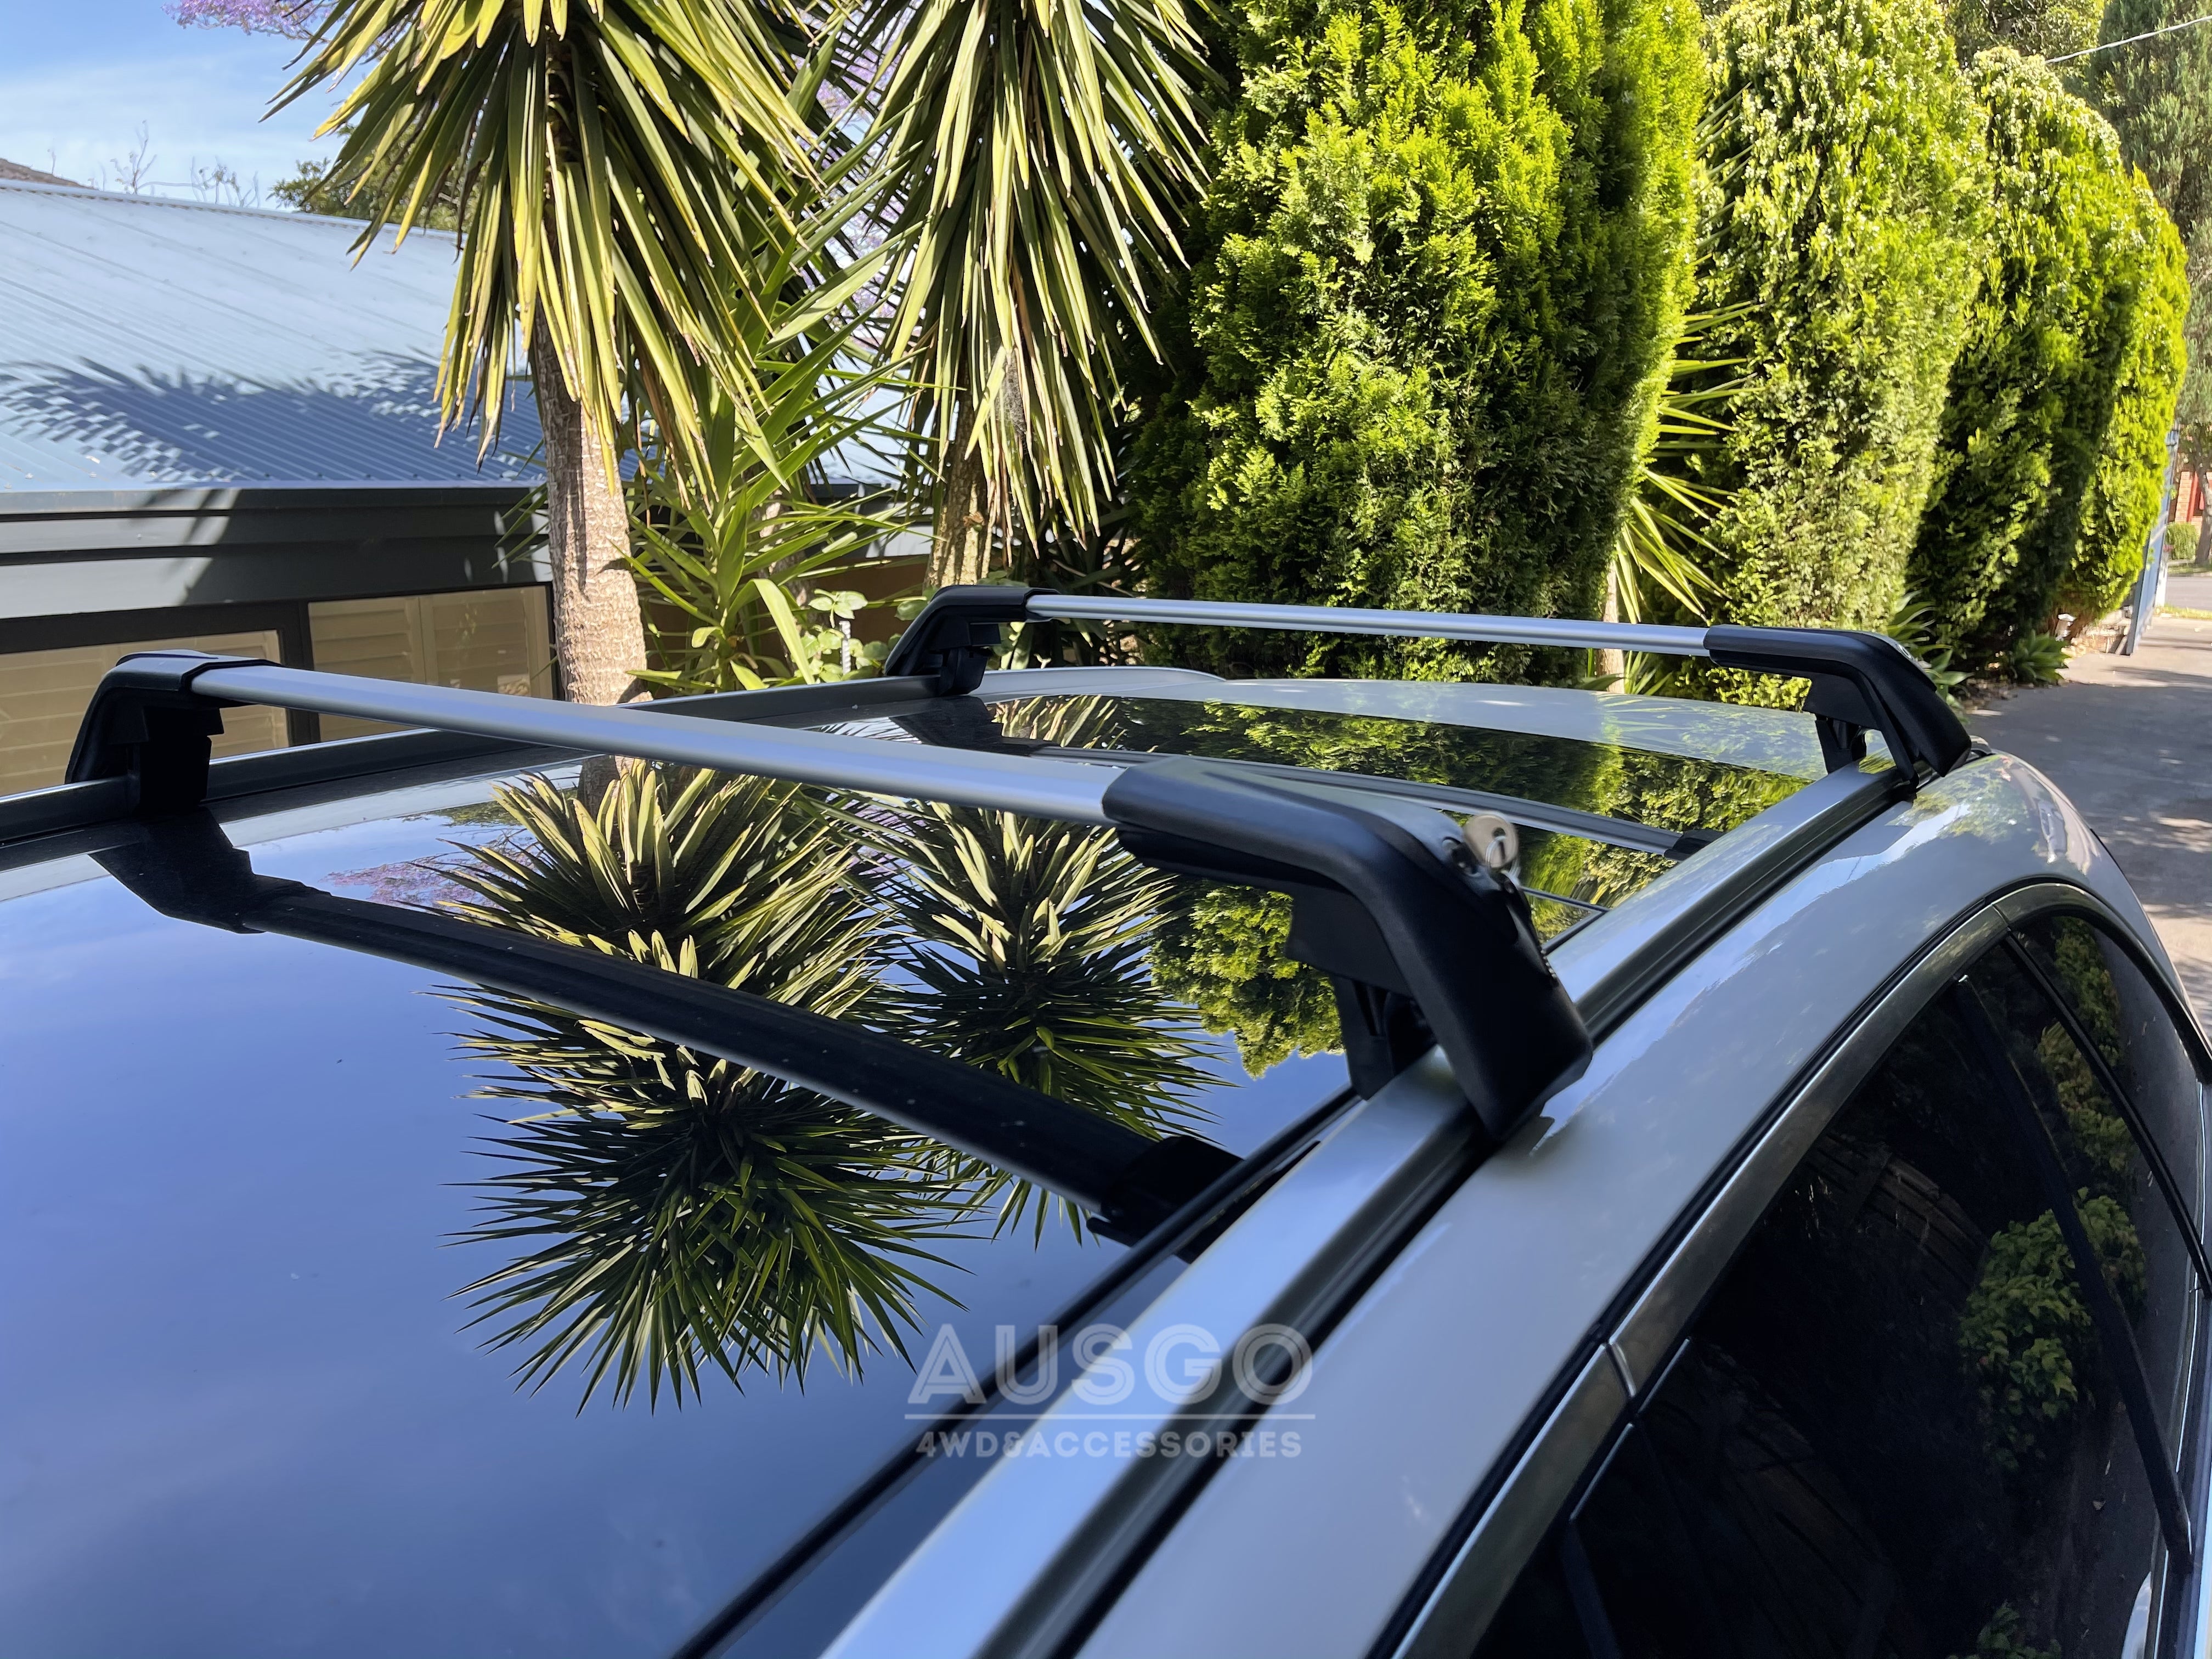 Pair Aluminum Cross Bar for BMW X1 E84 2010-2015 Clamp in Flush Rail –  AUSGO 4X4 Accessories